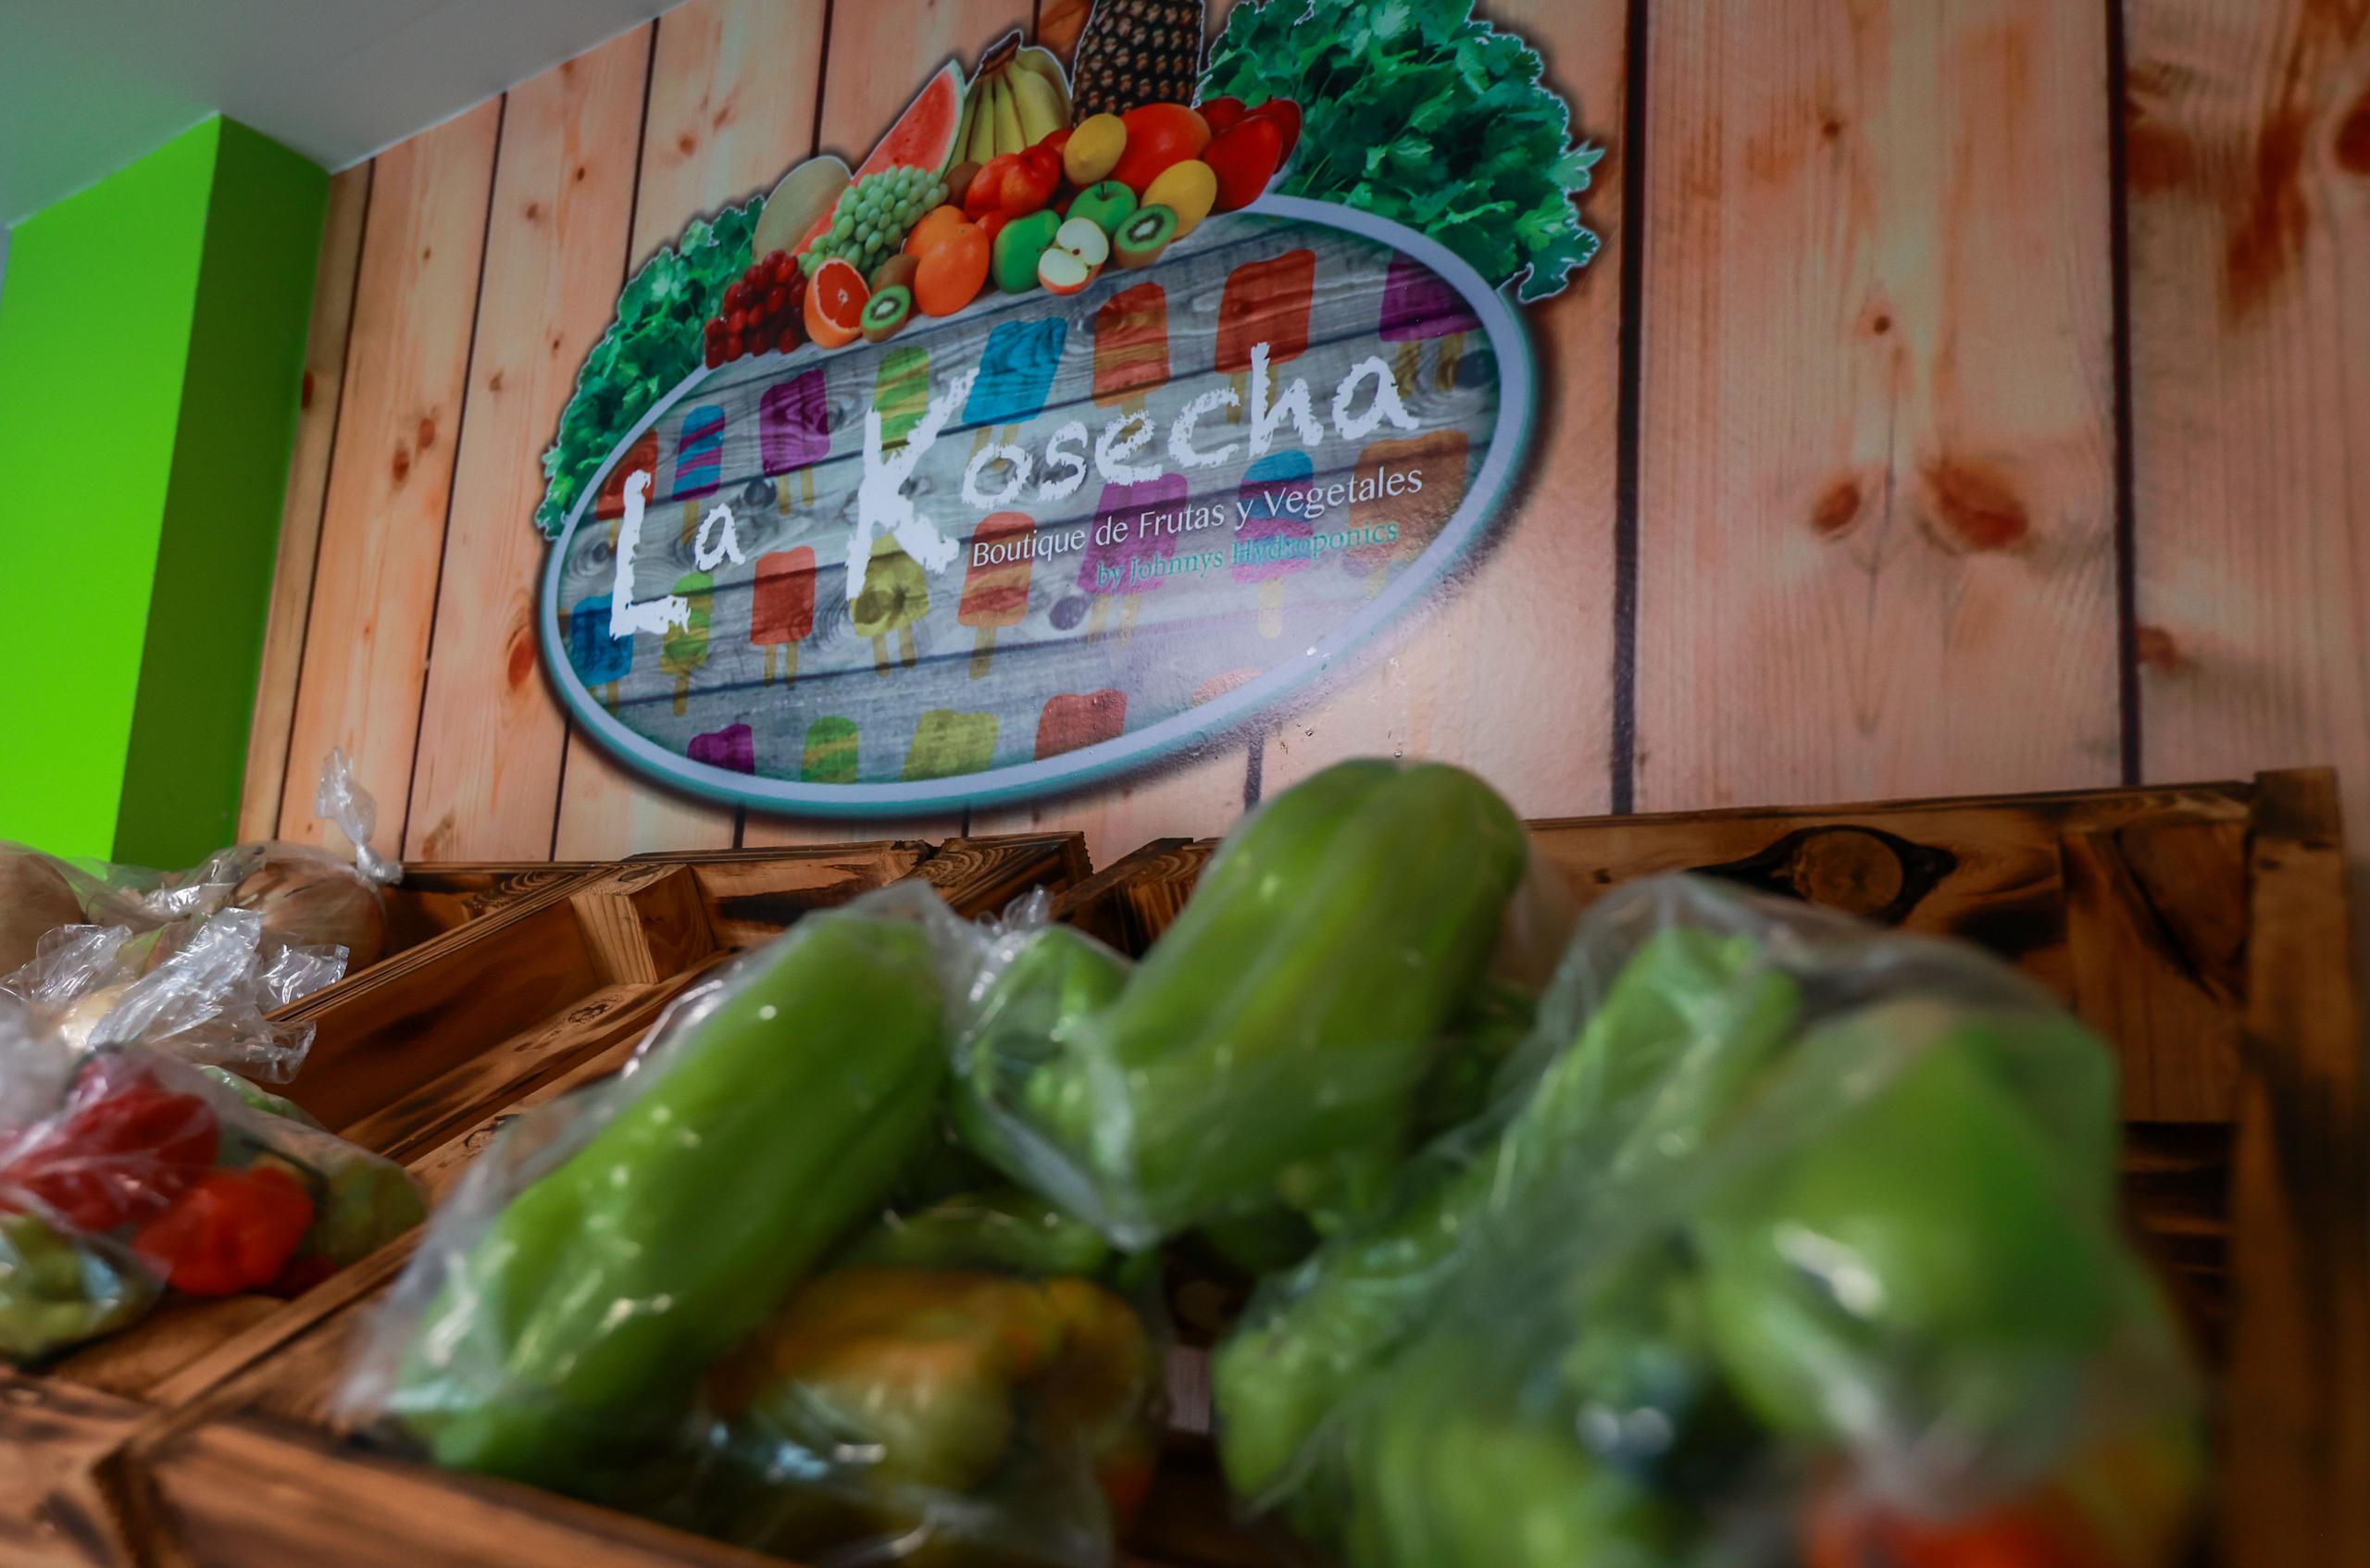 La finca cuenta con un área de venta y cafetería en las que los clientes pueden adquirir una variedad de vegetales.